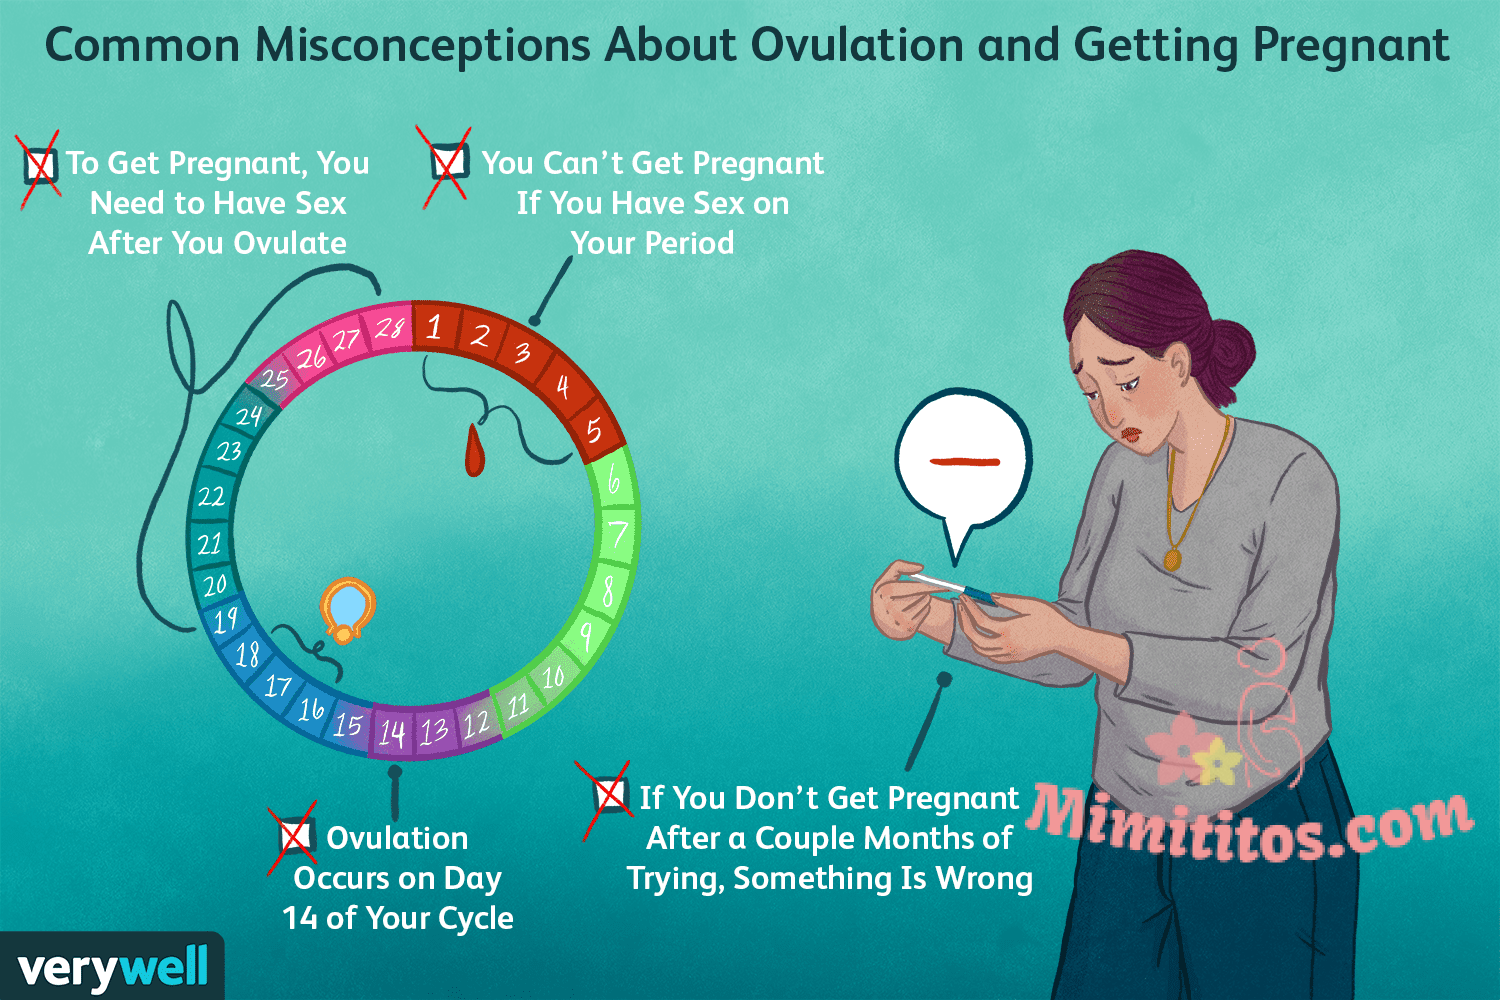 16 verdades sobre el embarazo y la ovulación